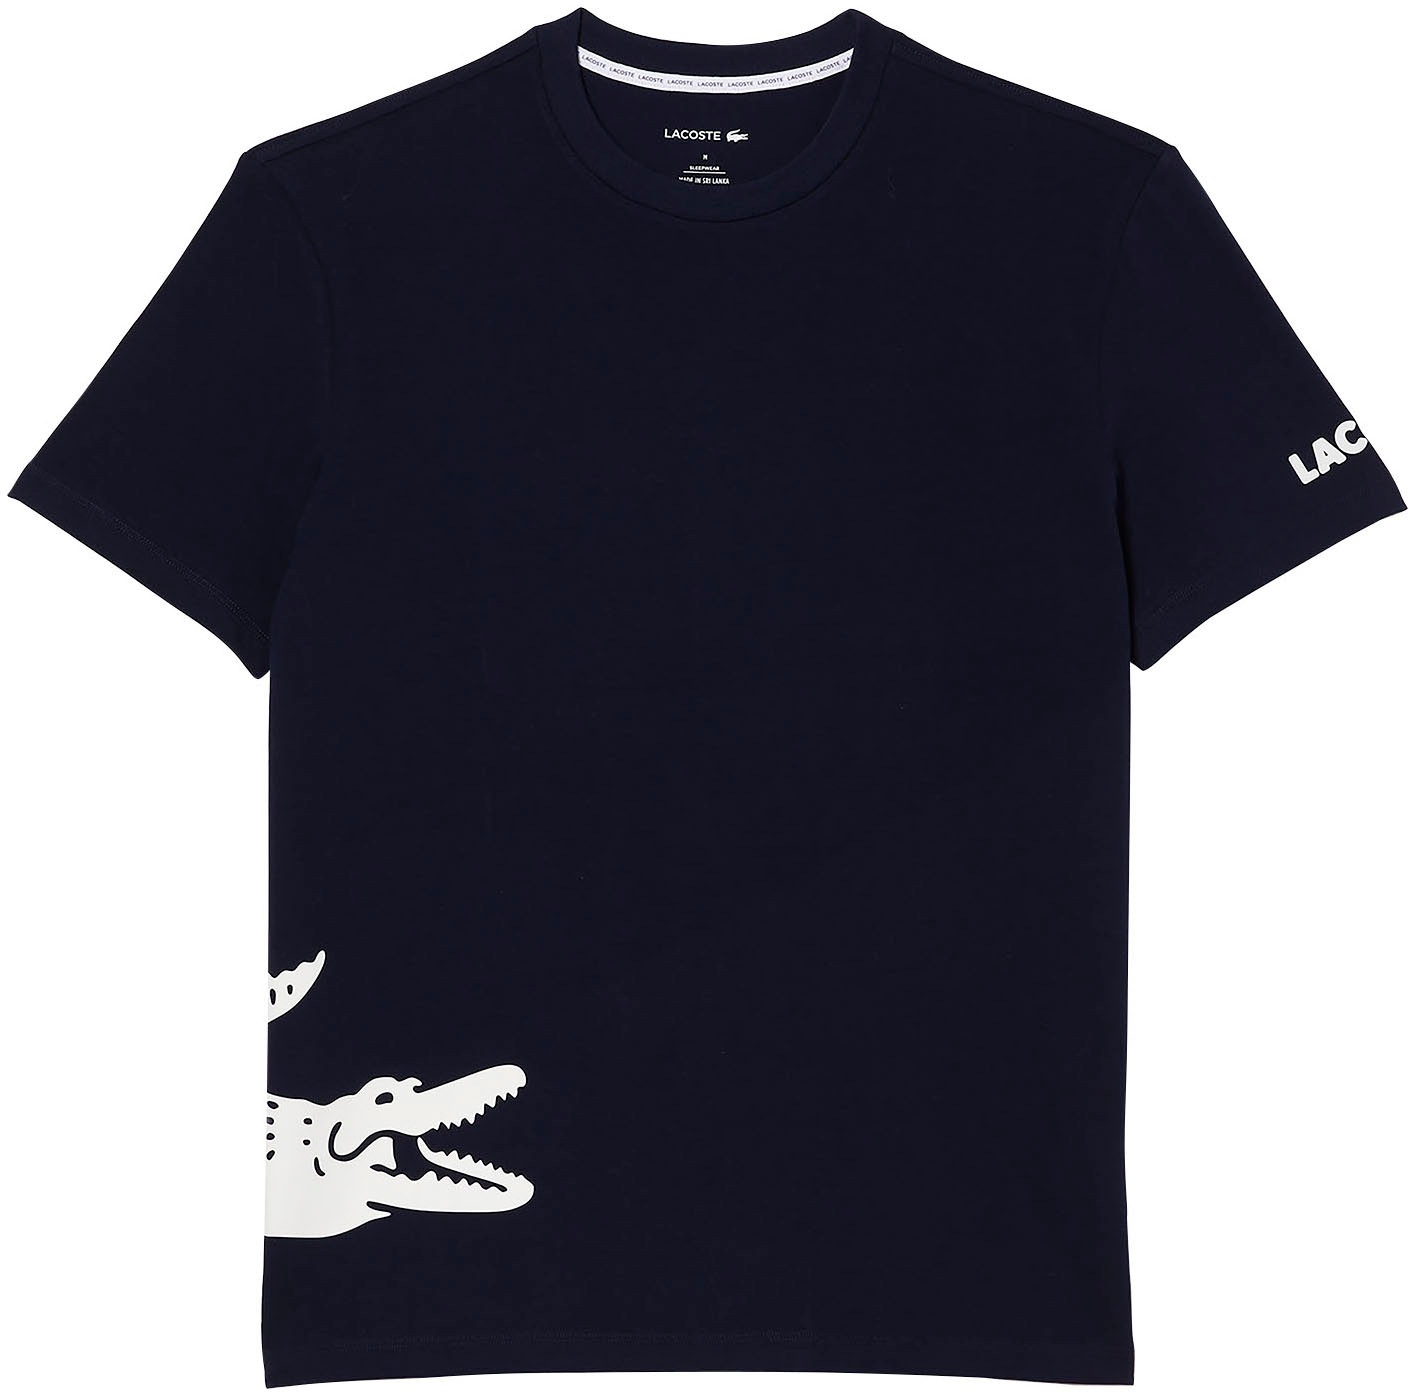 OTTO Lacoste online kaufen bei T-Shirt